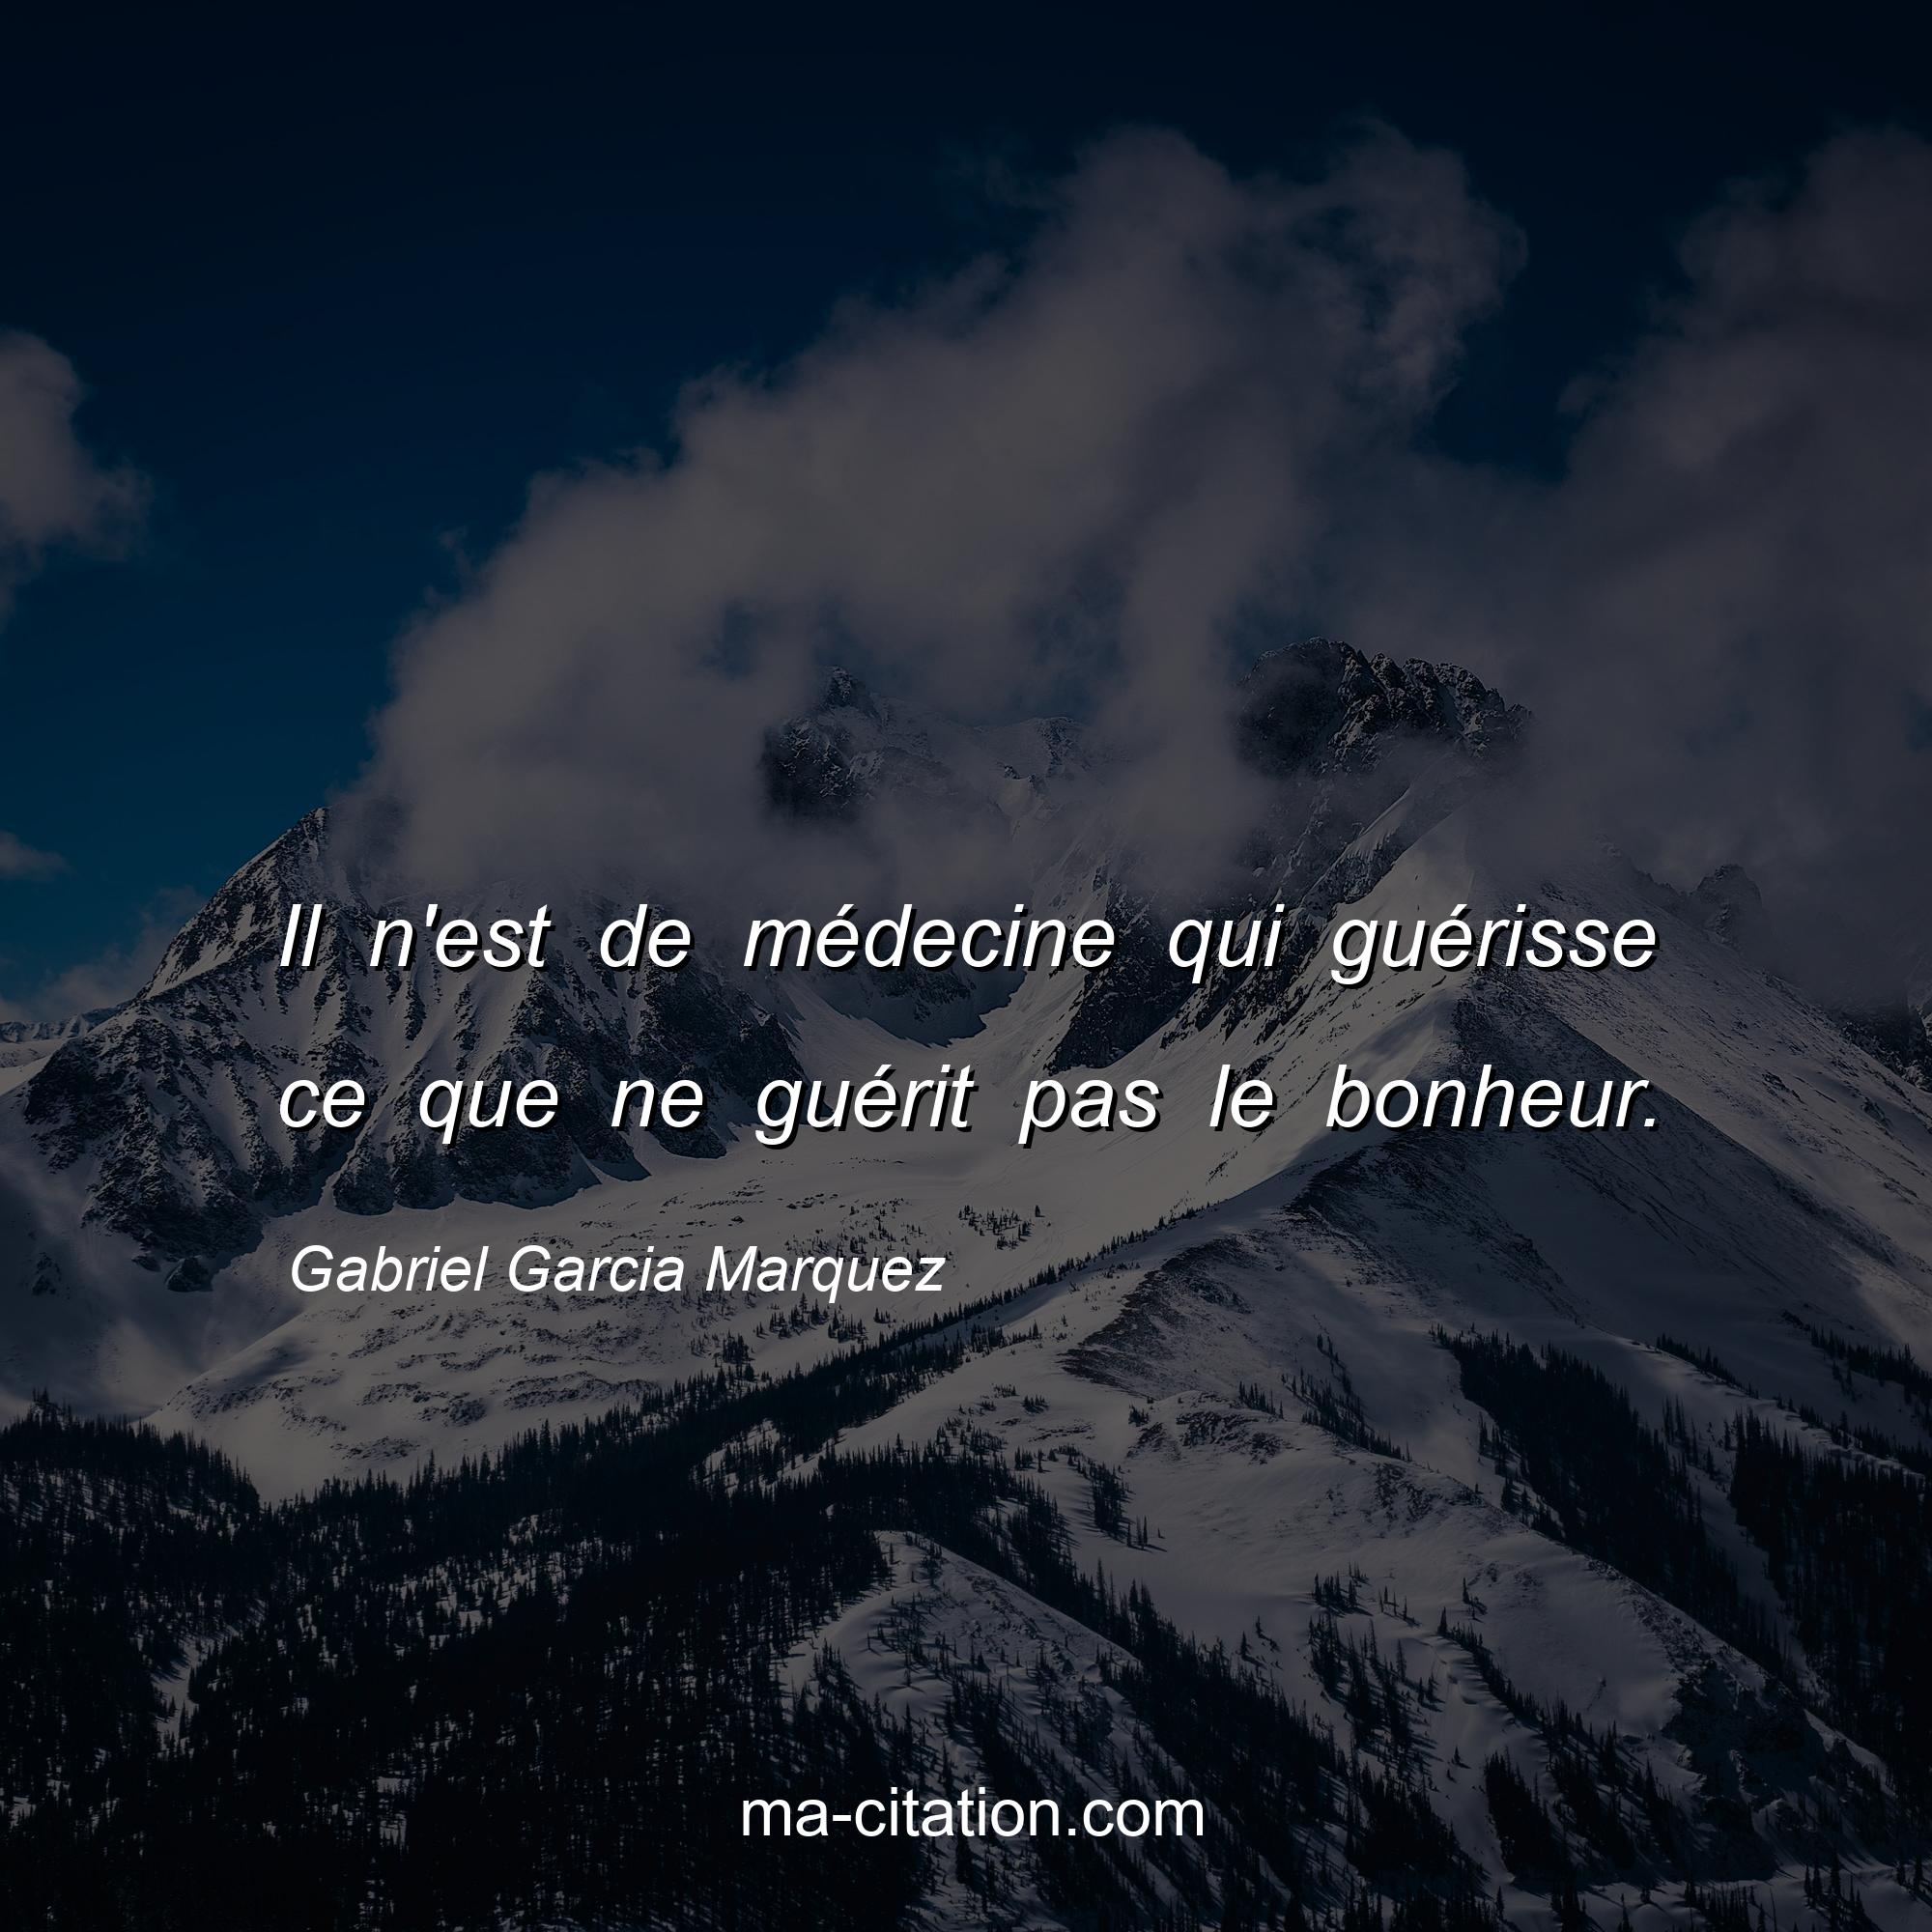 Gabriel Garcia Marquez : Il n'est de médecine qui guérisse ce que ne guérit pas le bonheur.